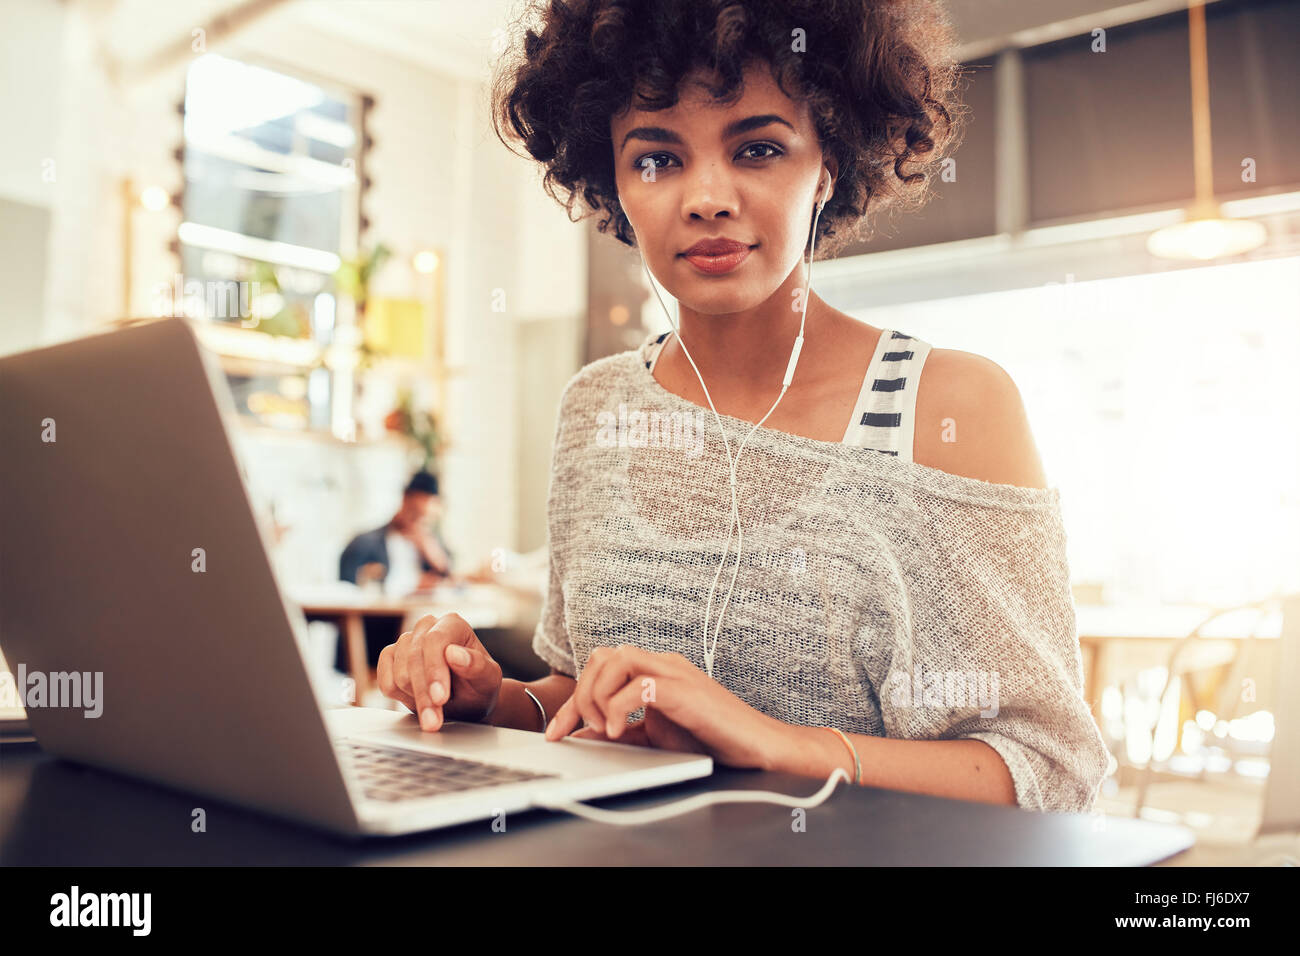 Porträt der jungen Frau mit Laptop im Café. Afrikanische Frau im Coffee-Shop mit einem Laptop. Stockfoto